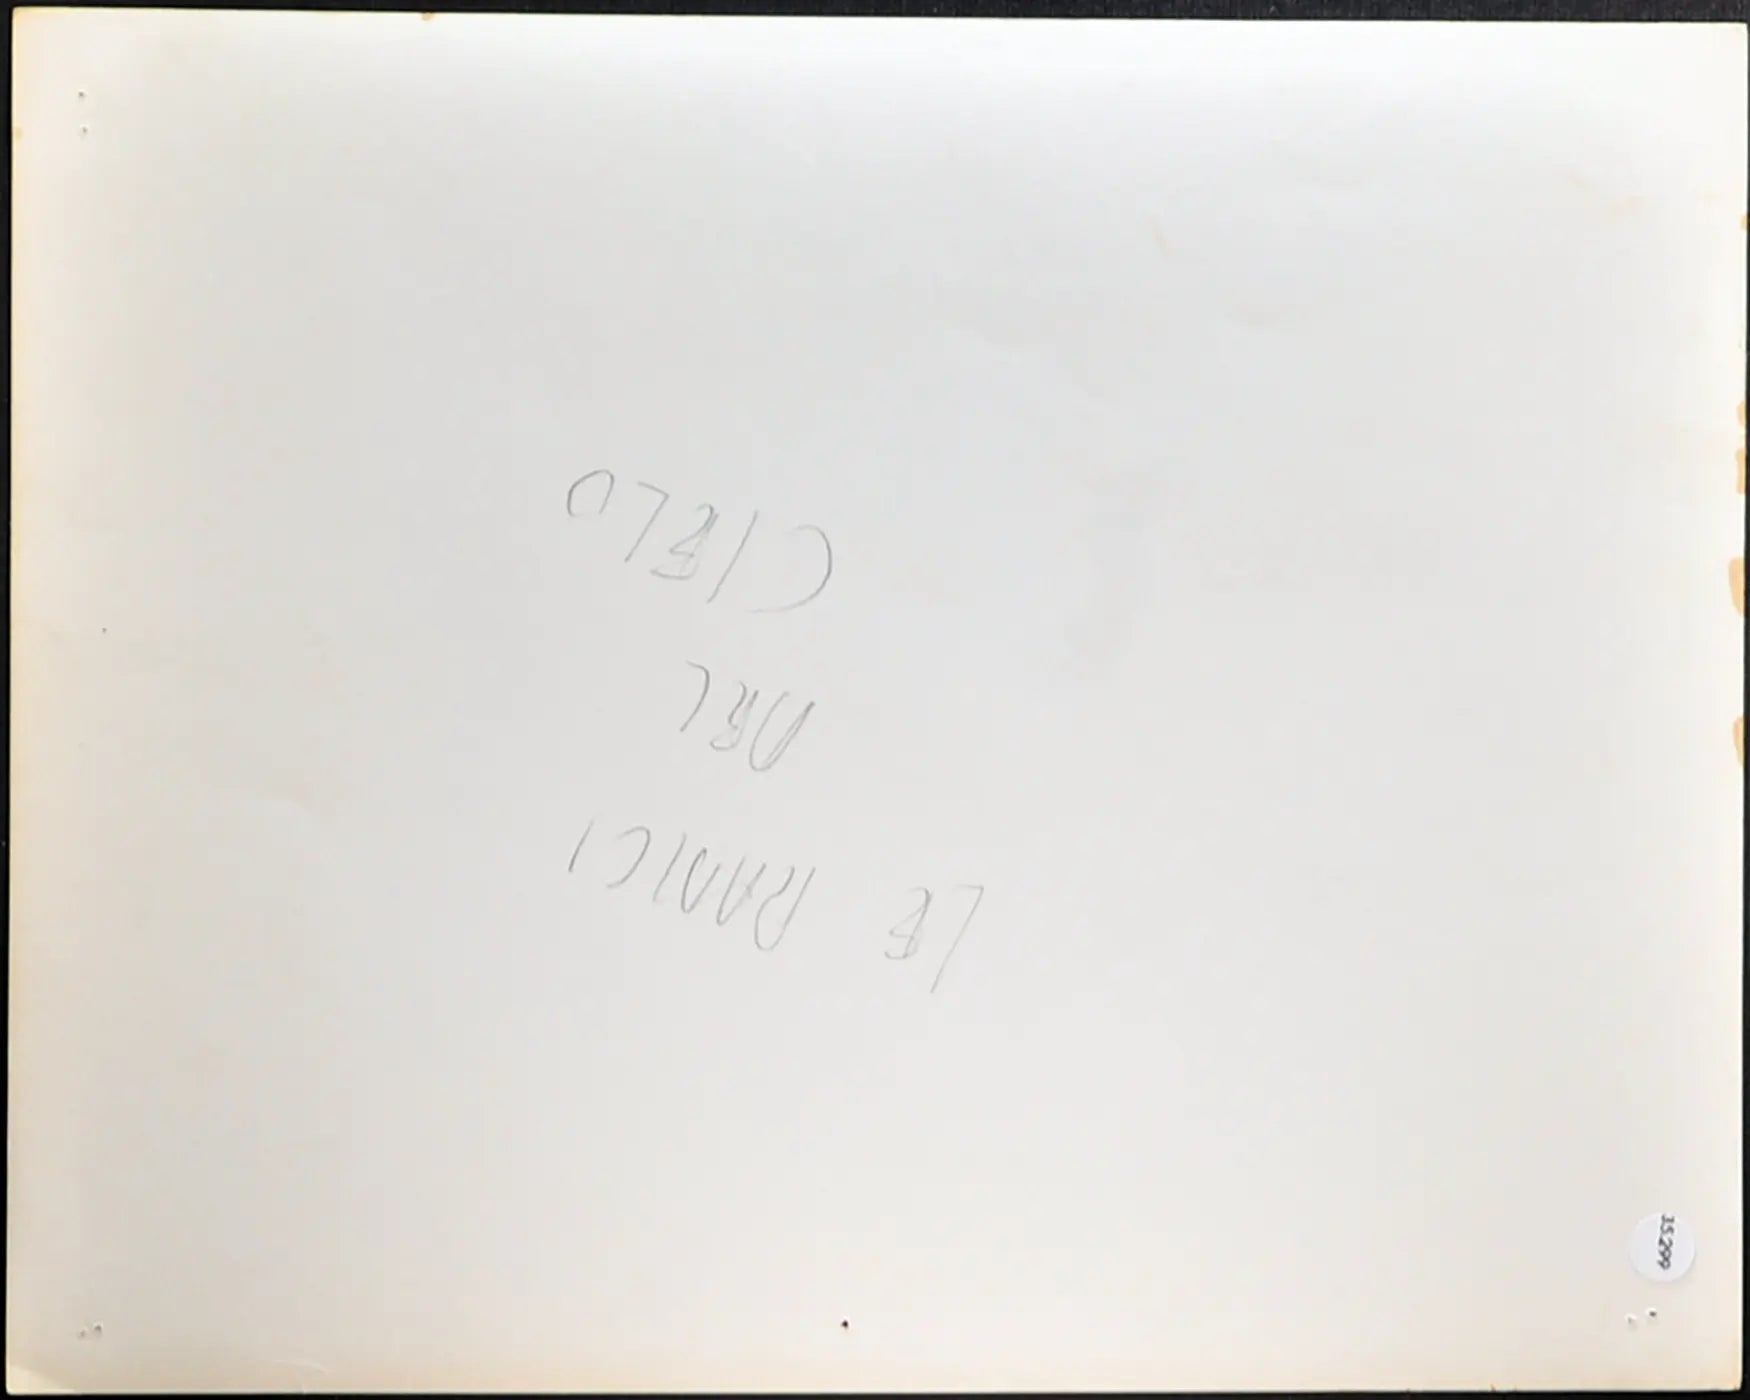 Film Le radici del cielo 1958 Ft 35299 - Stampa 20x25 cm - Farabola Stampa ai sali d'argento